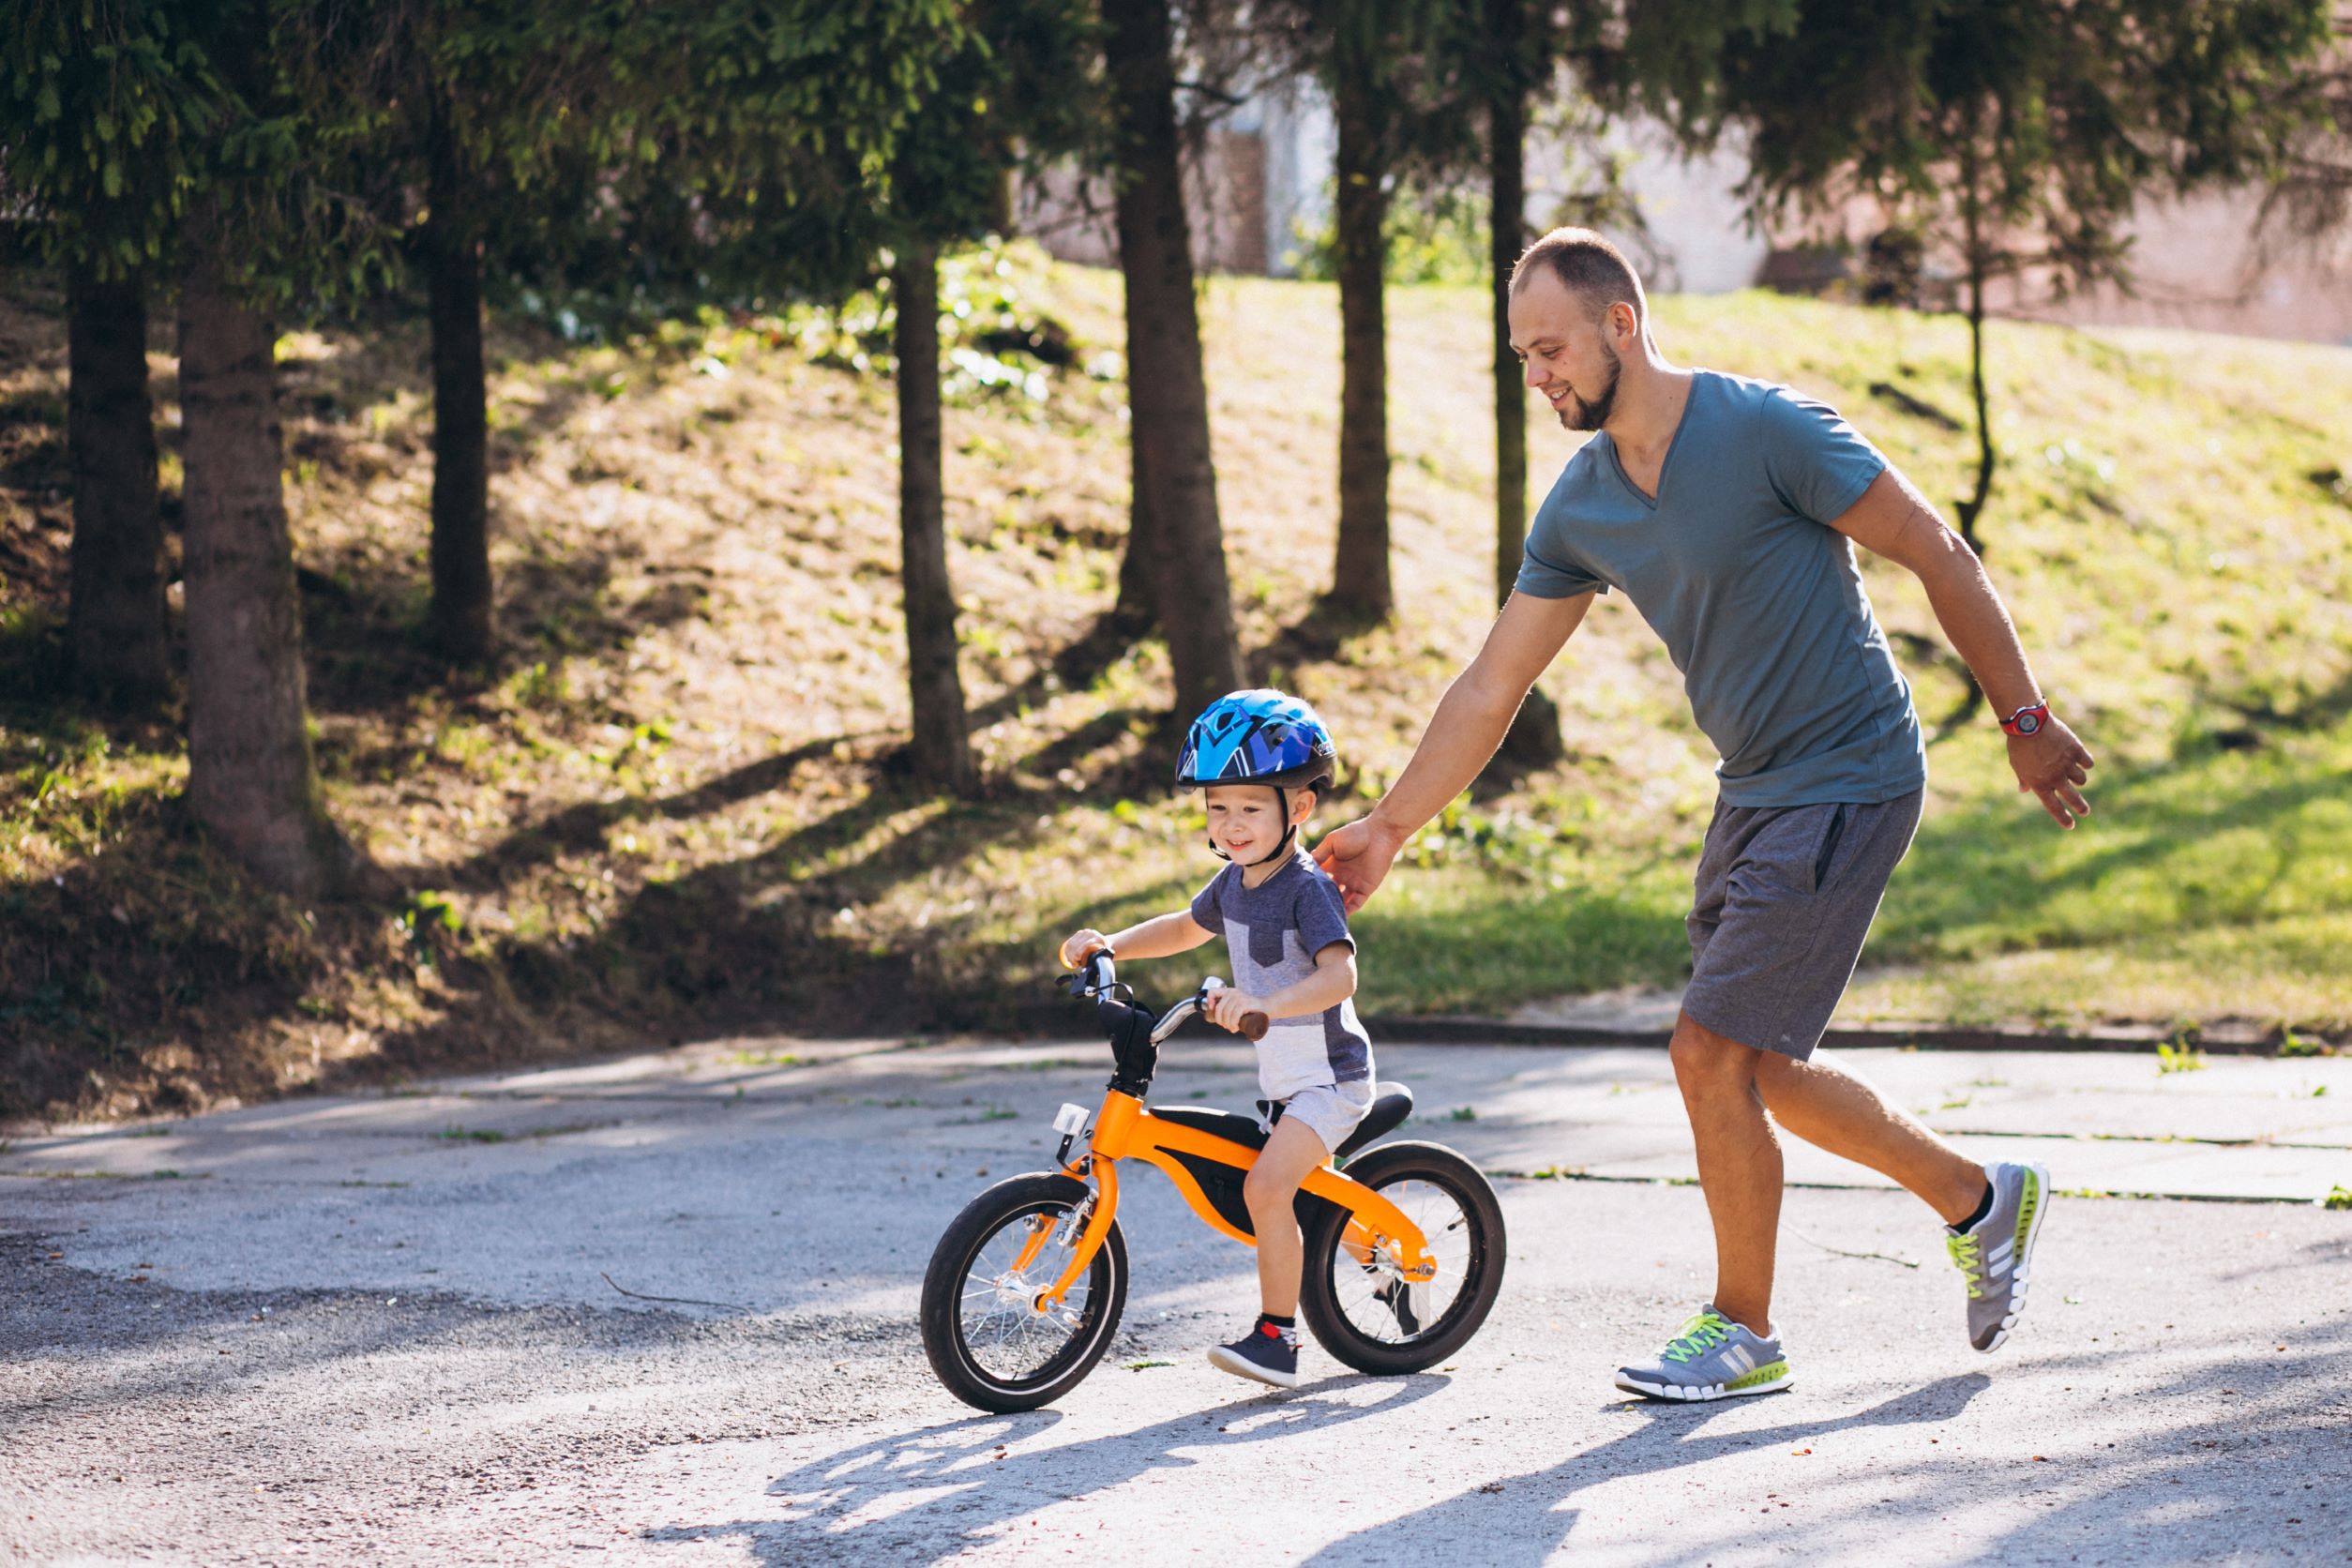 ojciec stopniowo uczy jeździć syna na rowerze bez pedałów